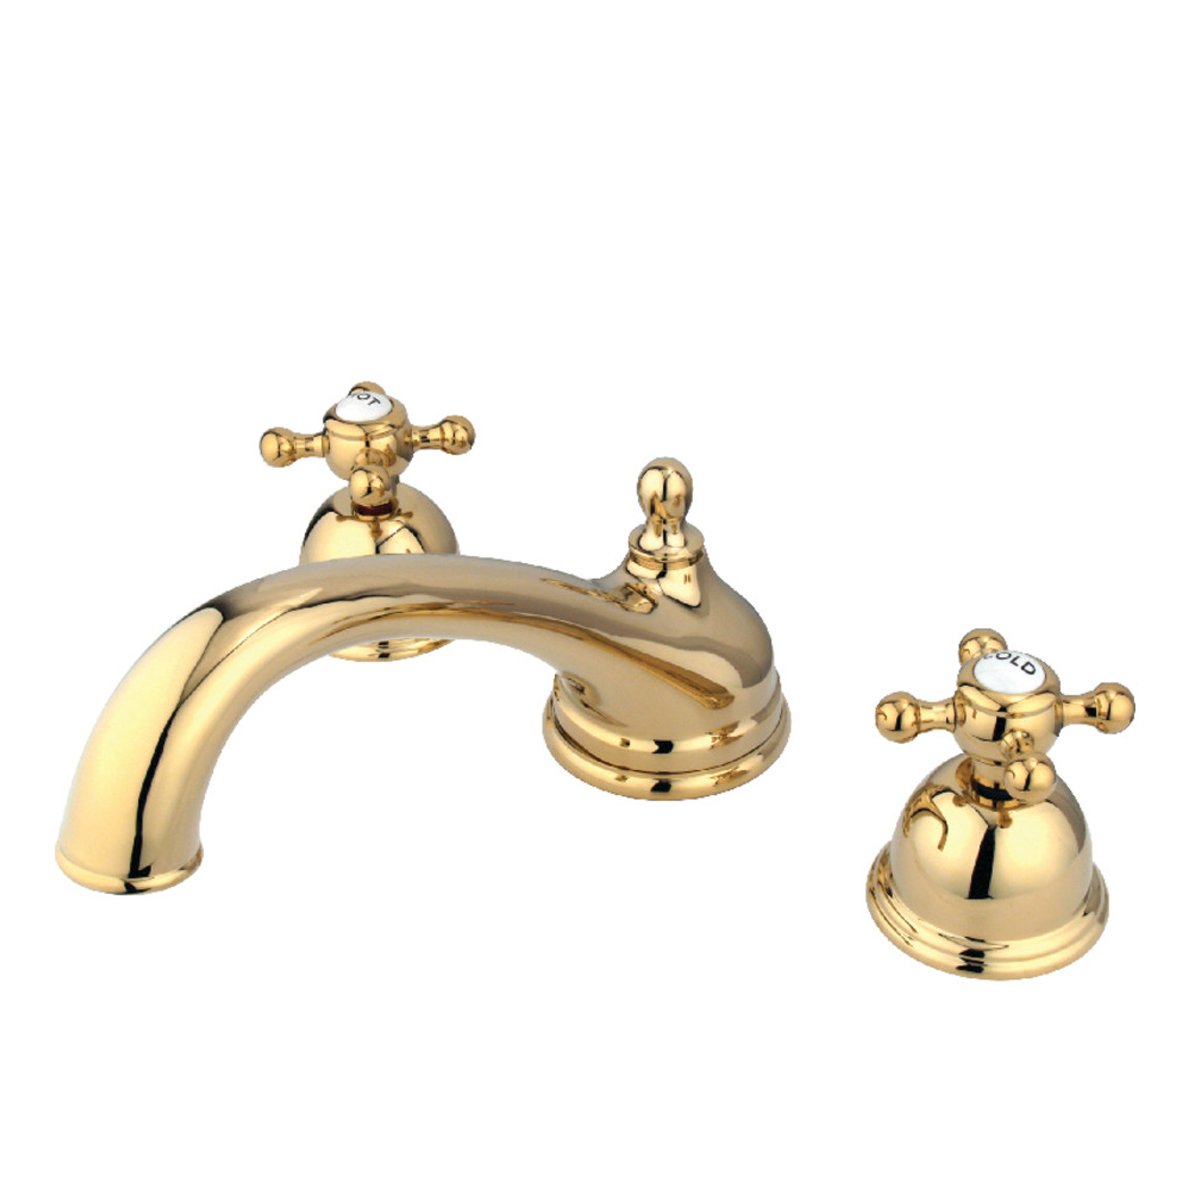 Kingston Brass Vintage Roman 8.44" x 8" x 3.5" Tub Faucet